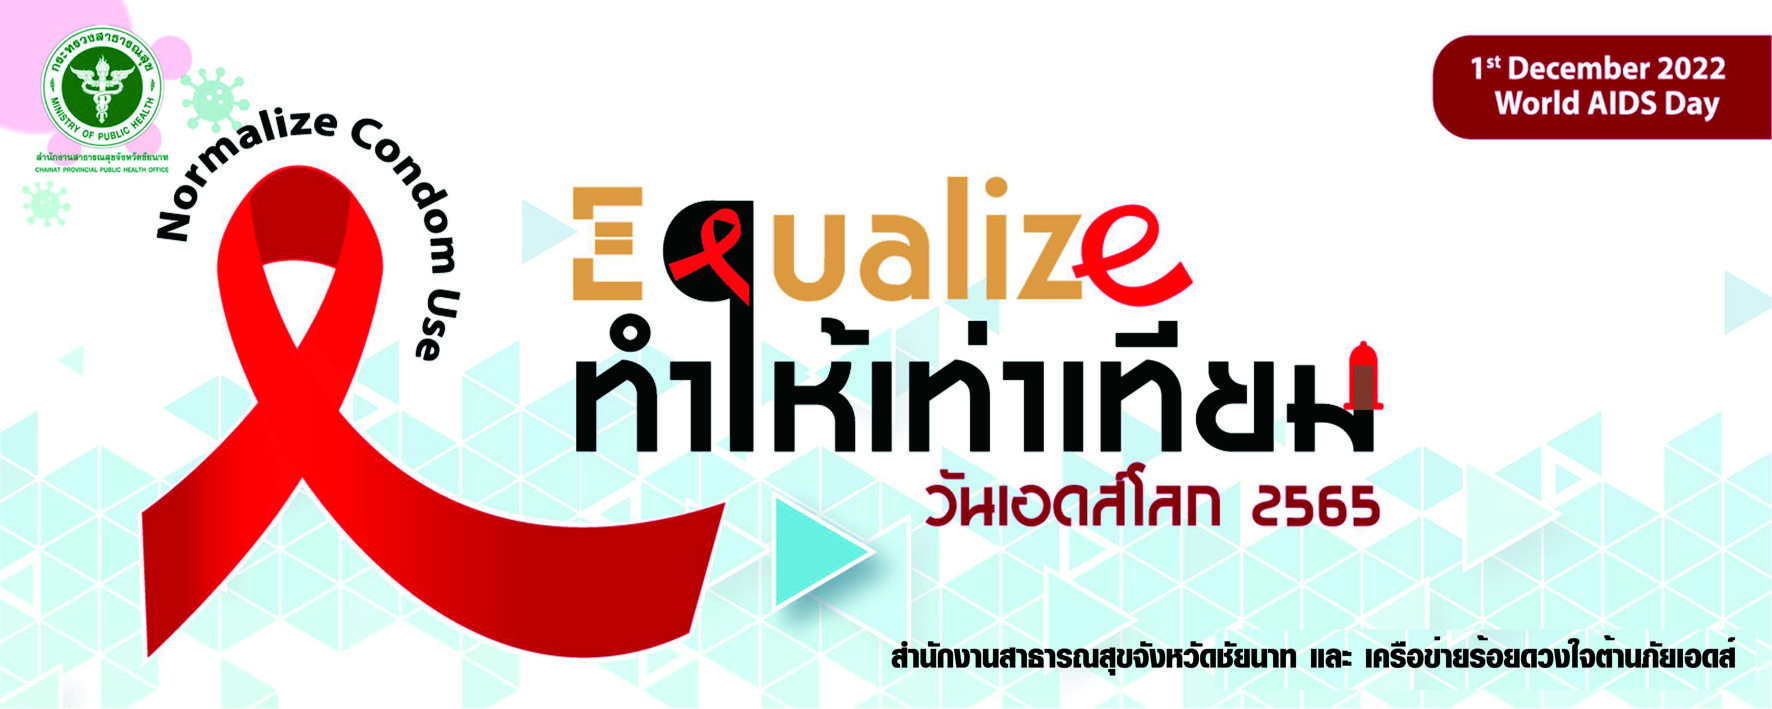 สธ.ชัยนาท ร่วมรณรงค์ วันเอดส์โลก 1 ธันวาคม 2565 เน้นย้ำ “Equalize: ทำให้เท่าเทียม” ยุติเอดส์